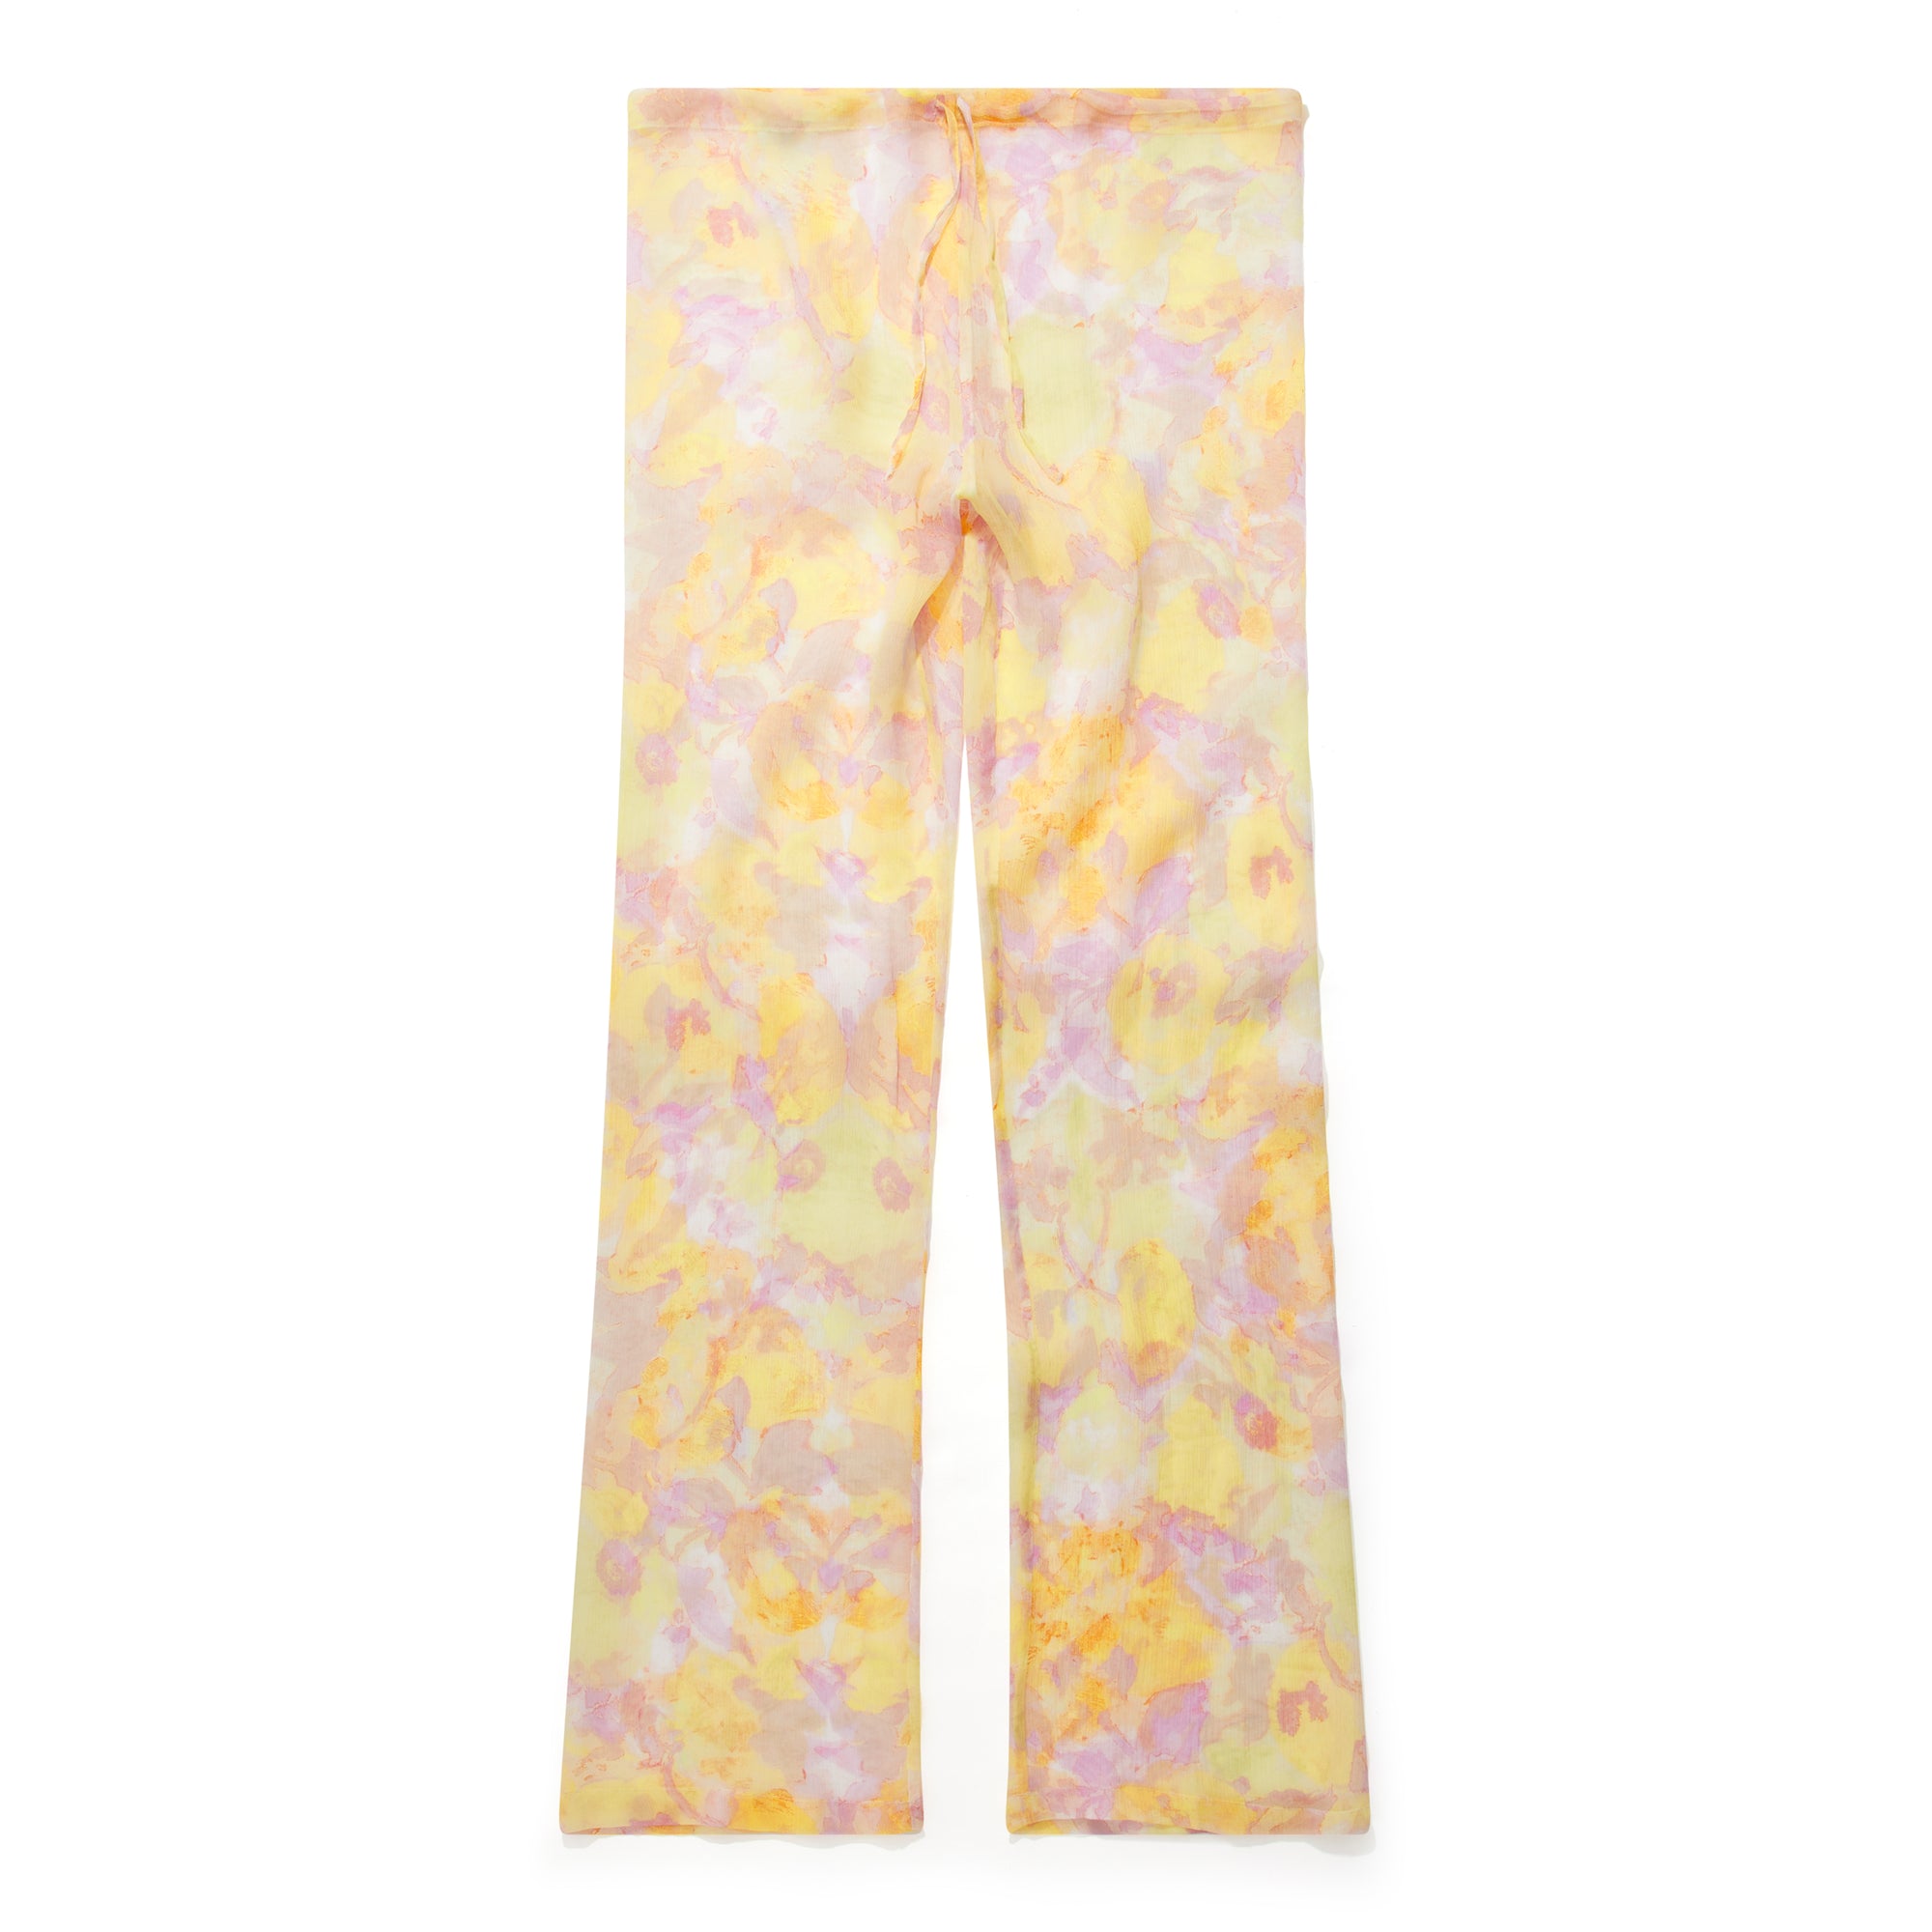 Dries Van Noten - Women’s Floral Print Pants - (Orange/Yellow) view 1